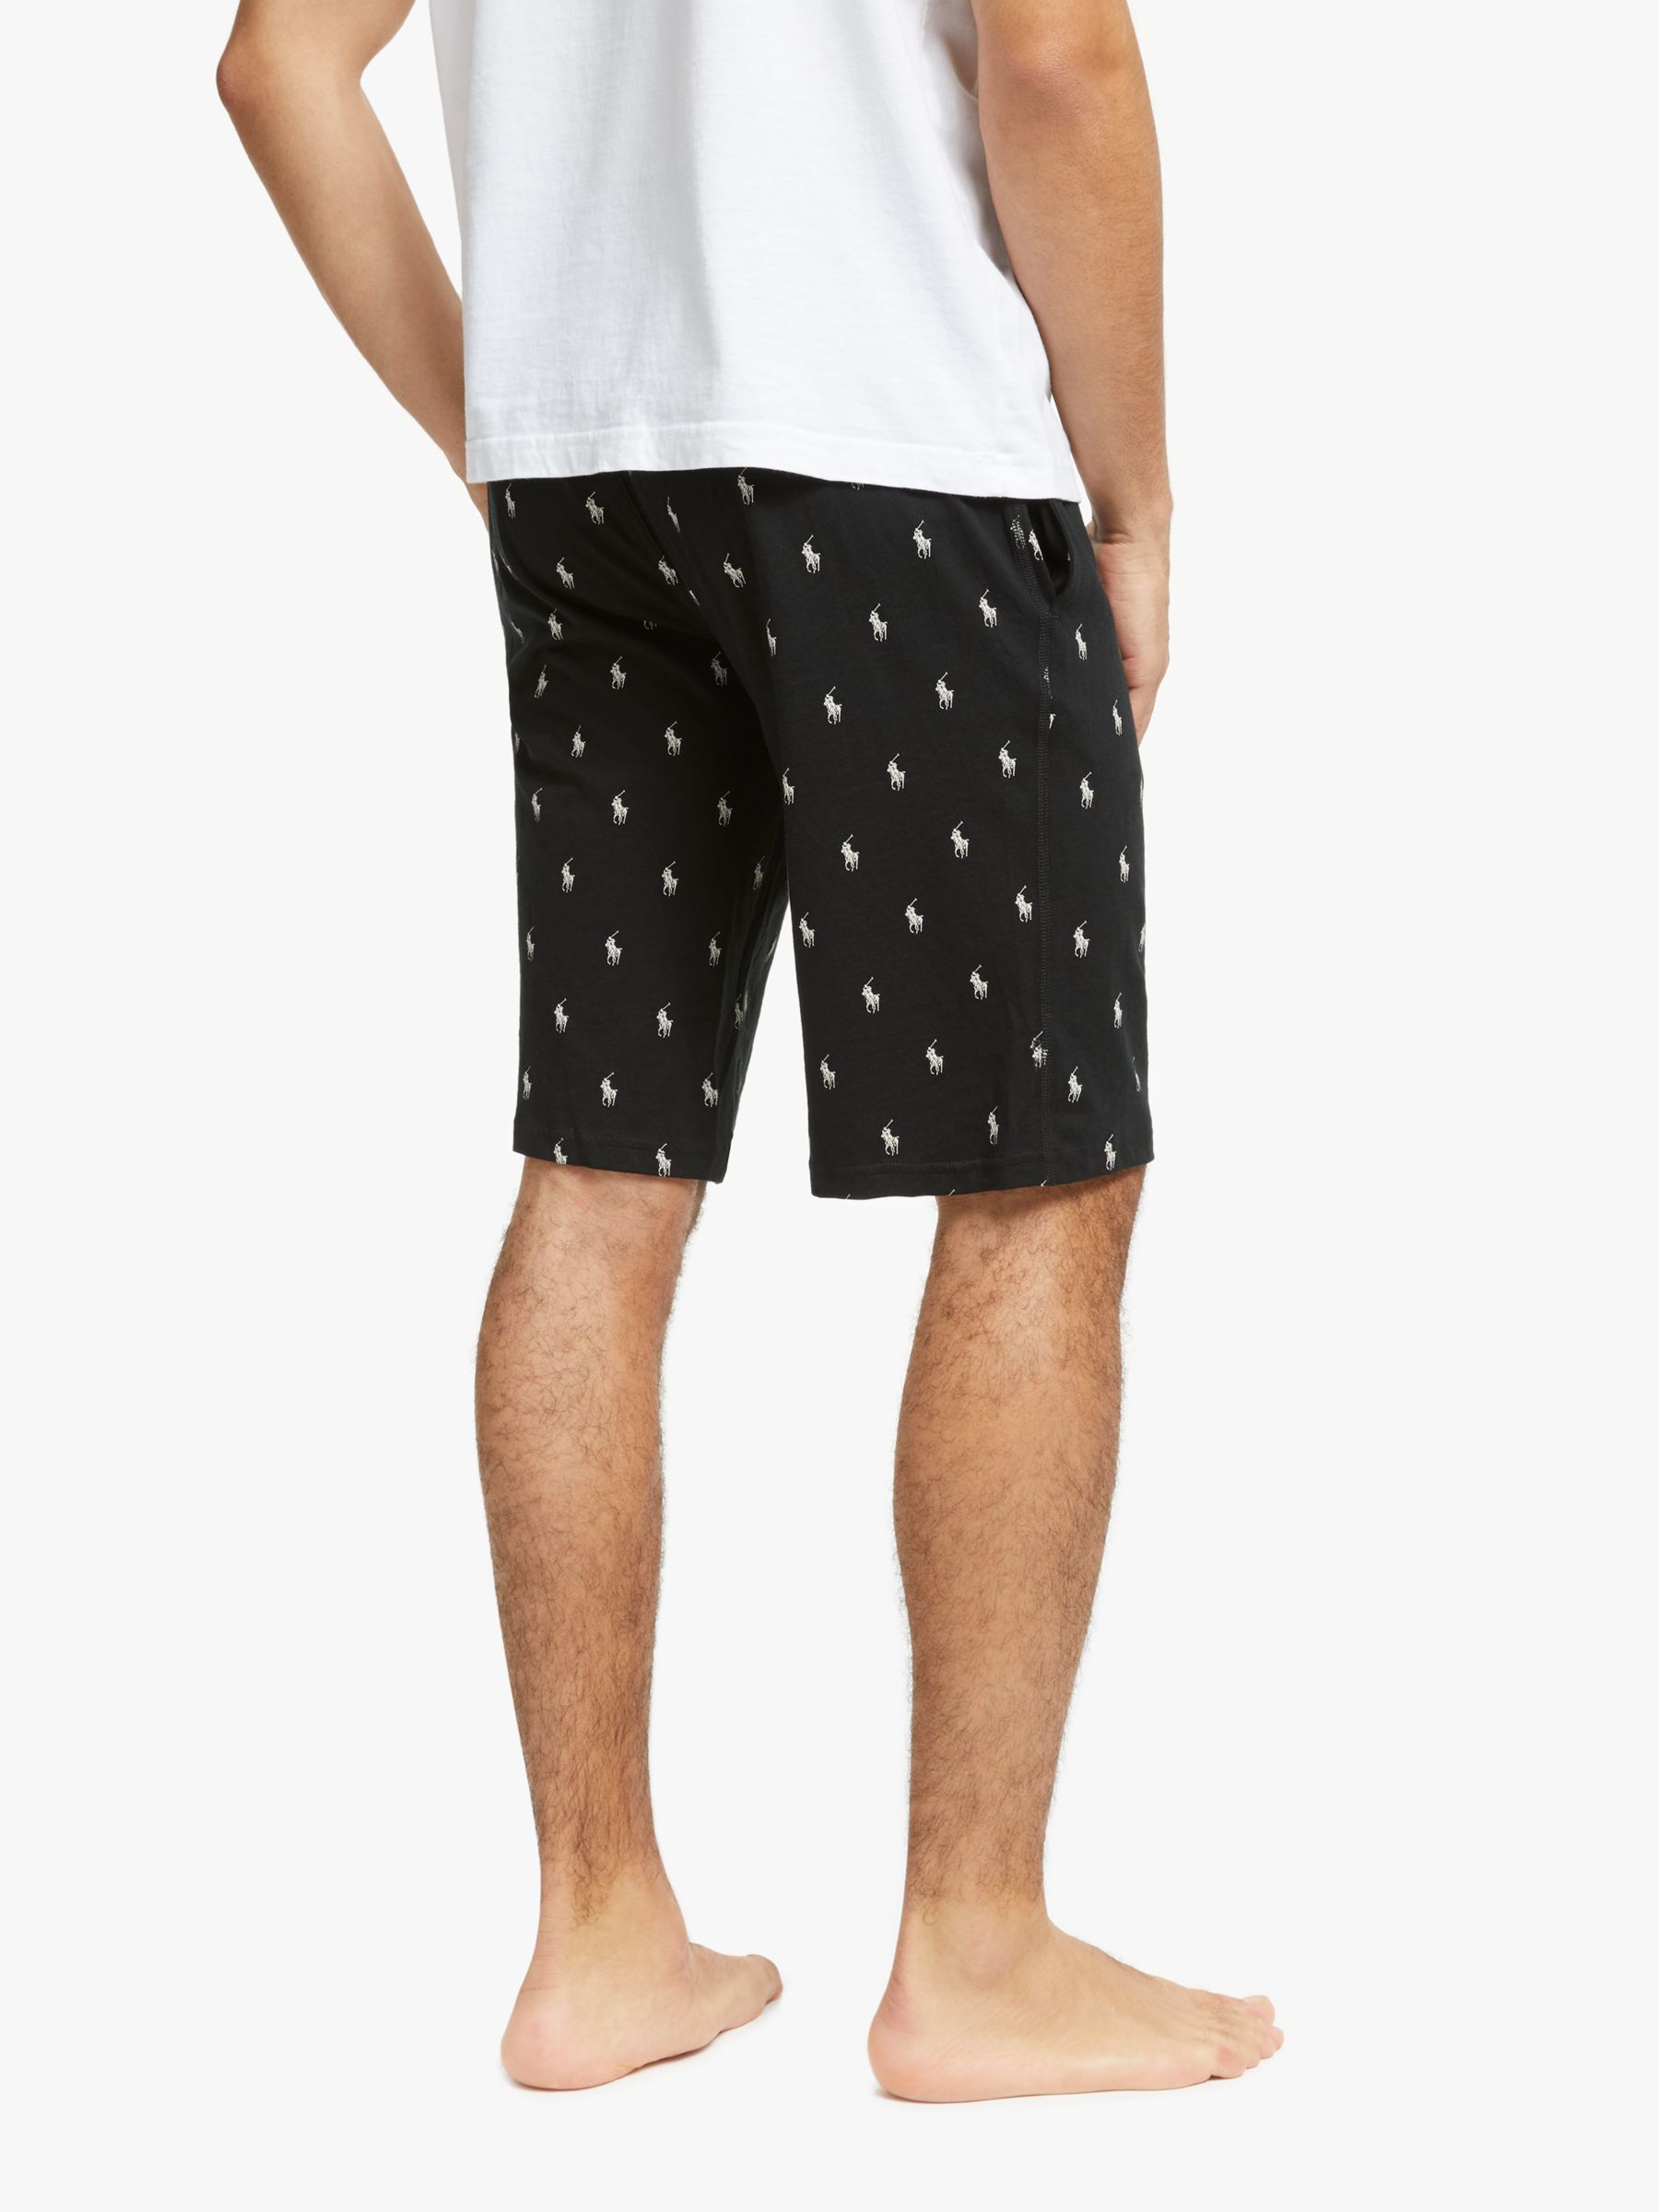 Polo Ralph Lauren Jersey Nightwear Shorts, Black